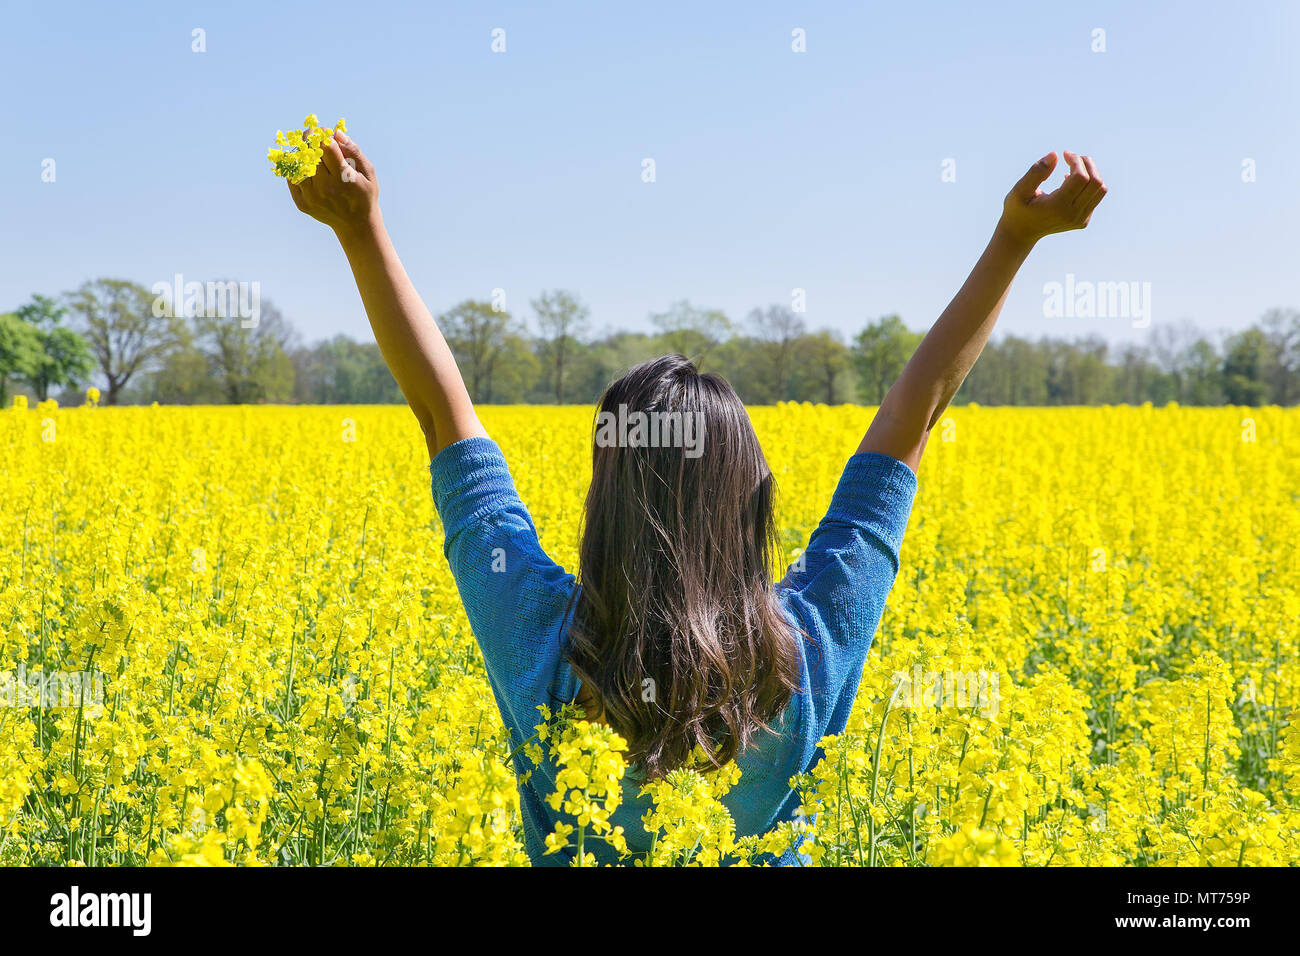 Mujer joven expresa su felicidad con los brazos arriba en amarillo campo de colza Foto de stock